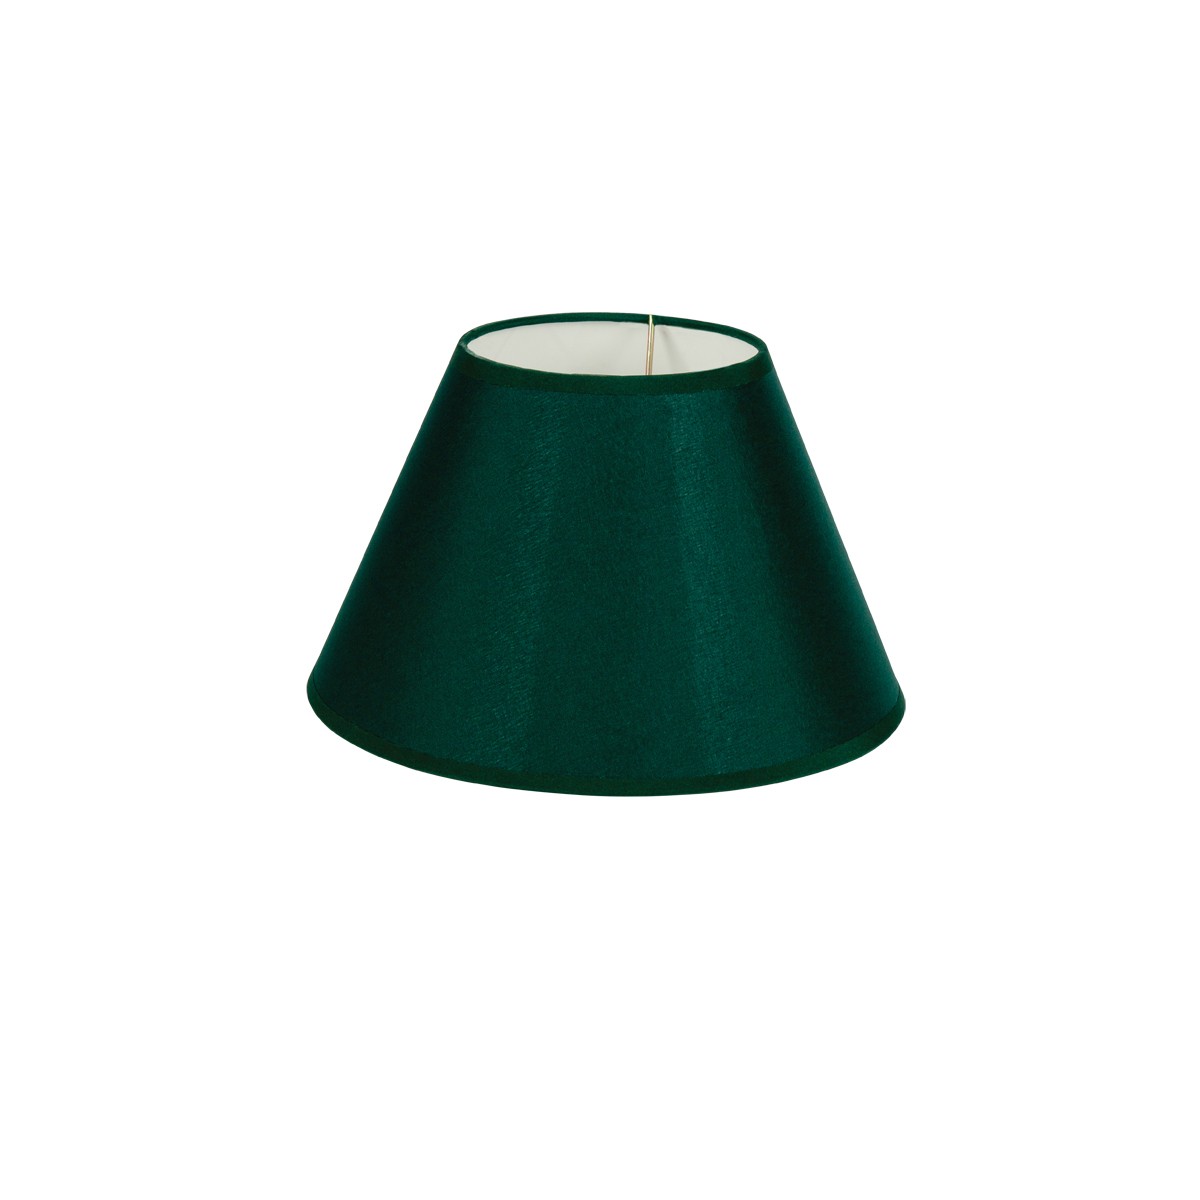 Καπέλο Μονόχρωμο Στρογγυλό Φ20cm Κάτω Πλευρά -Σε Πράσινο Χρώμα        VK/E27/E14/D20/GR